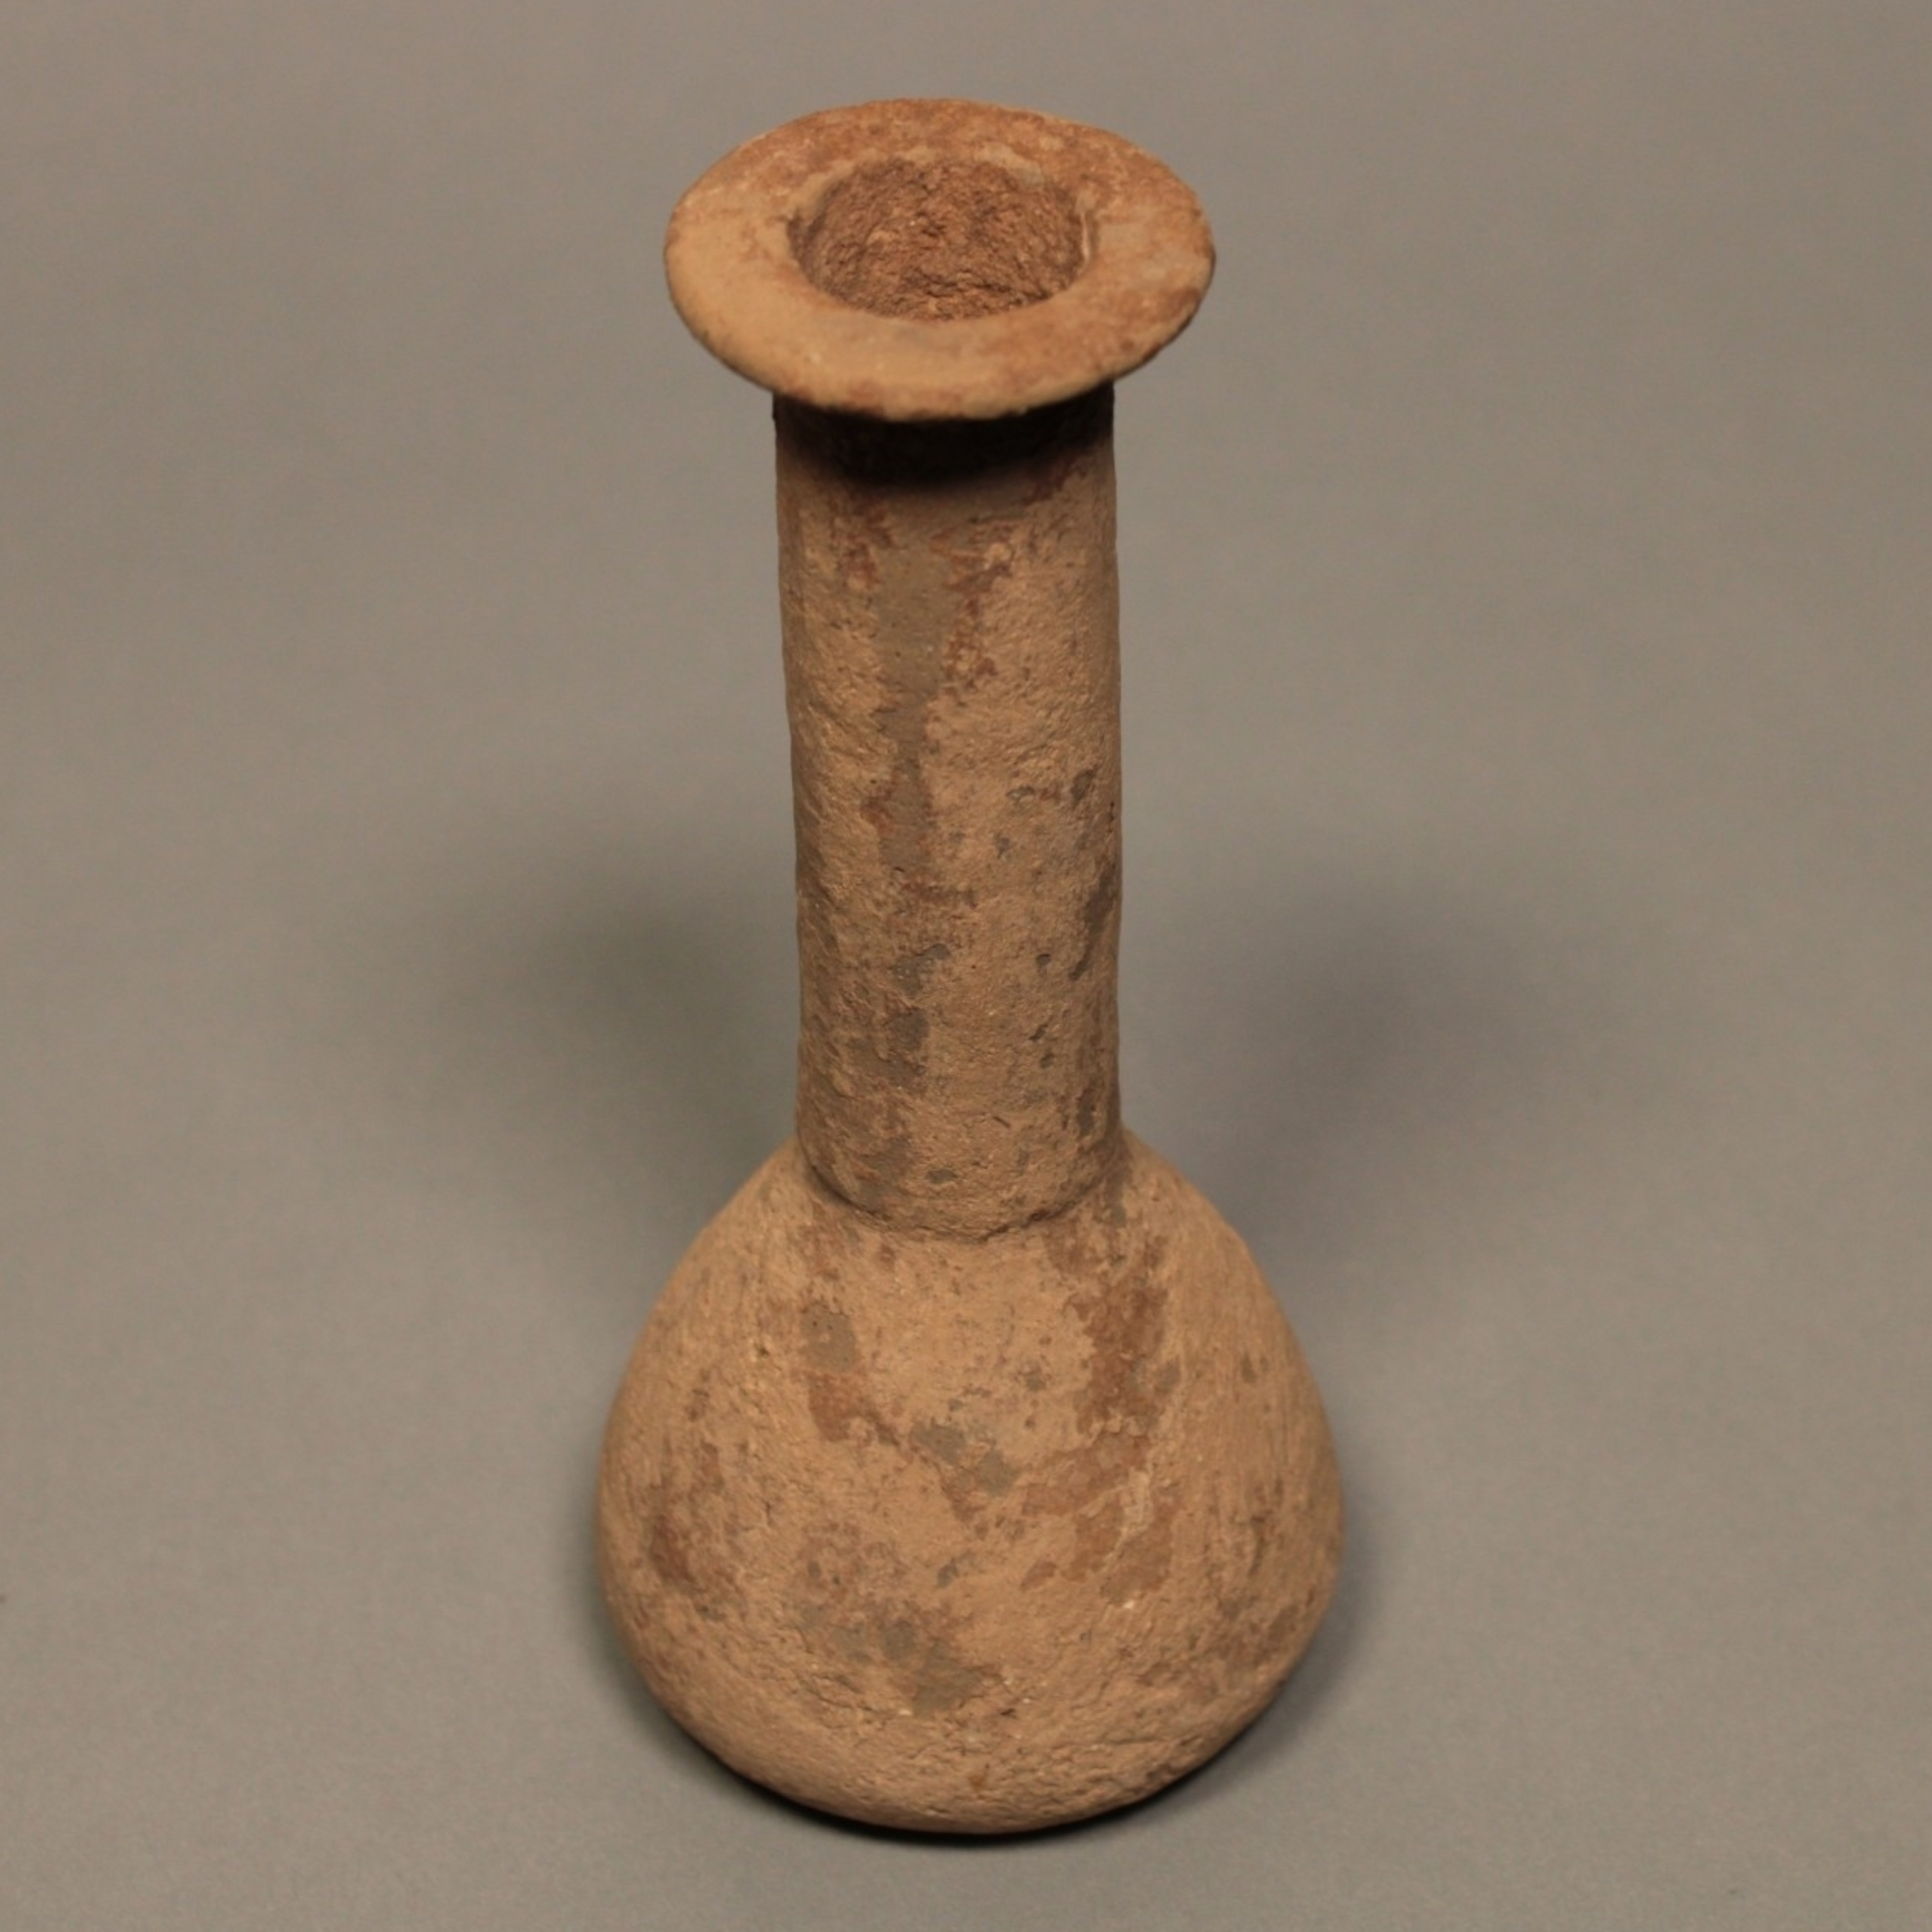 Greek Unguentarium Jar (Ceramic Bottle) - c. 700 to 400 BCE - Greek Archaic Period - 10/10/23 Auction